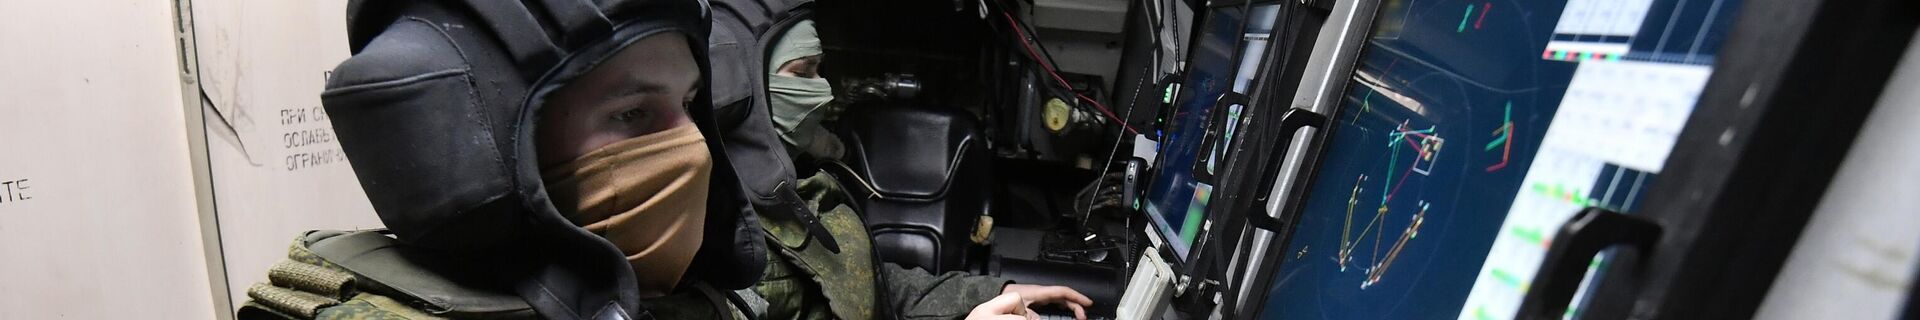 Работа противовоздушной обороны России на Запорожском направлении - Sputnik Беларусь